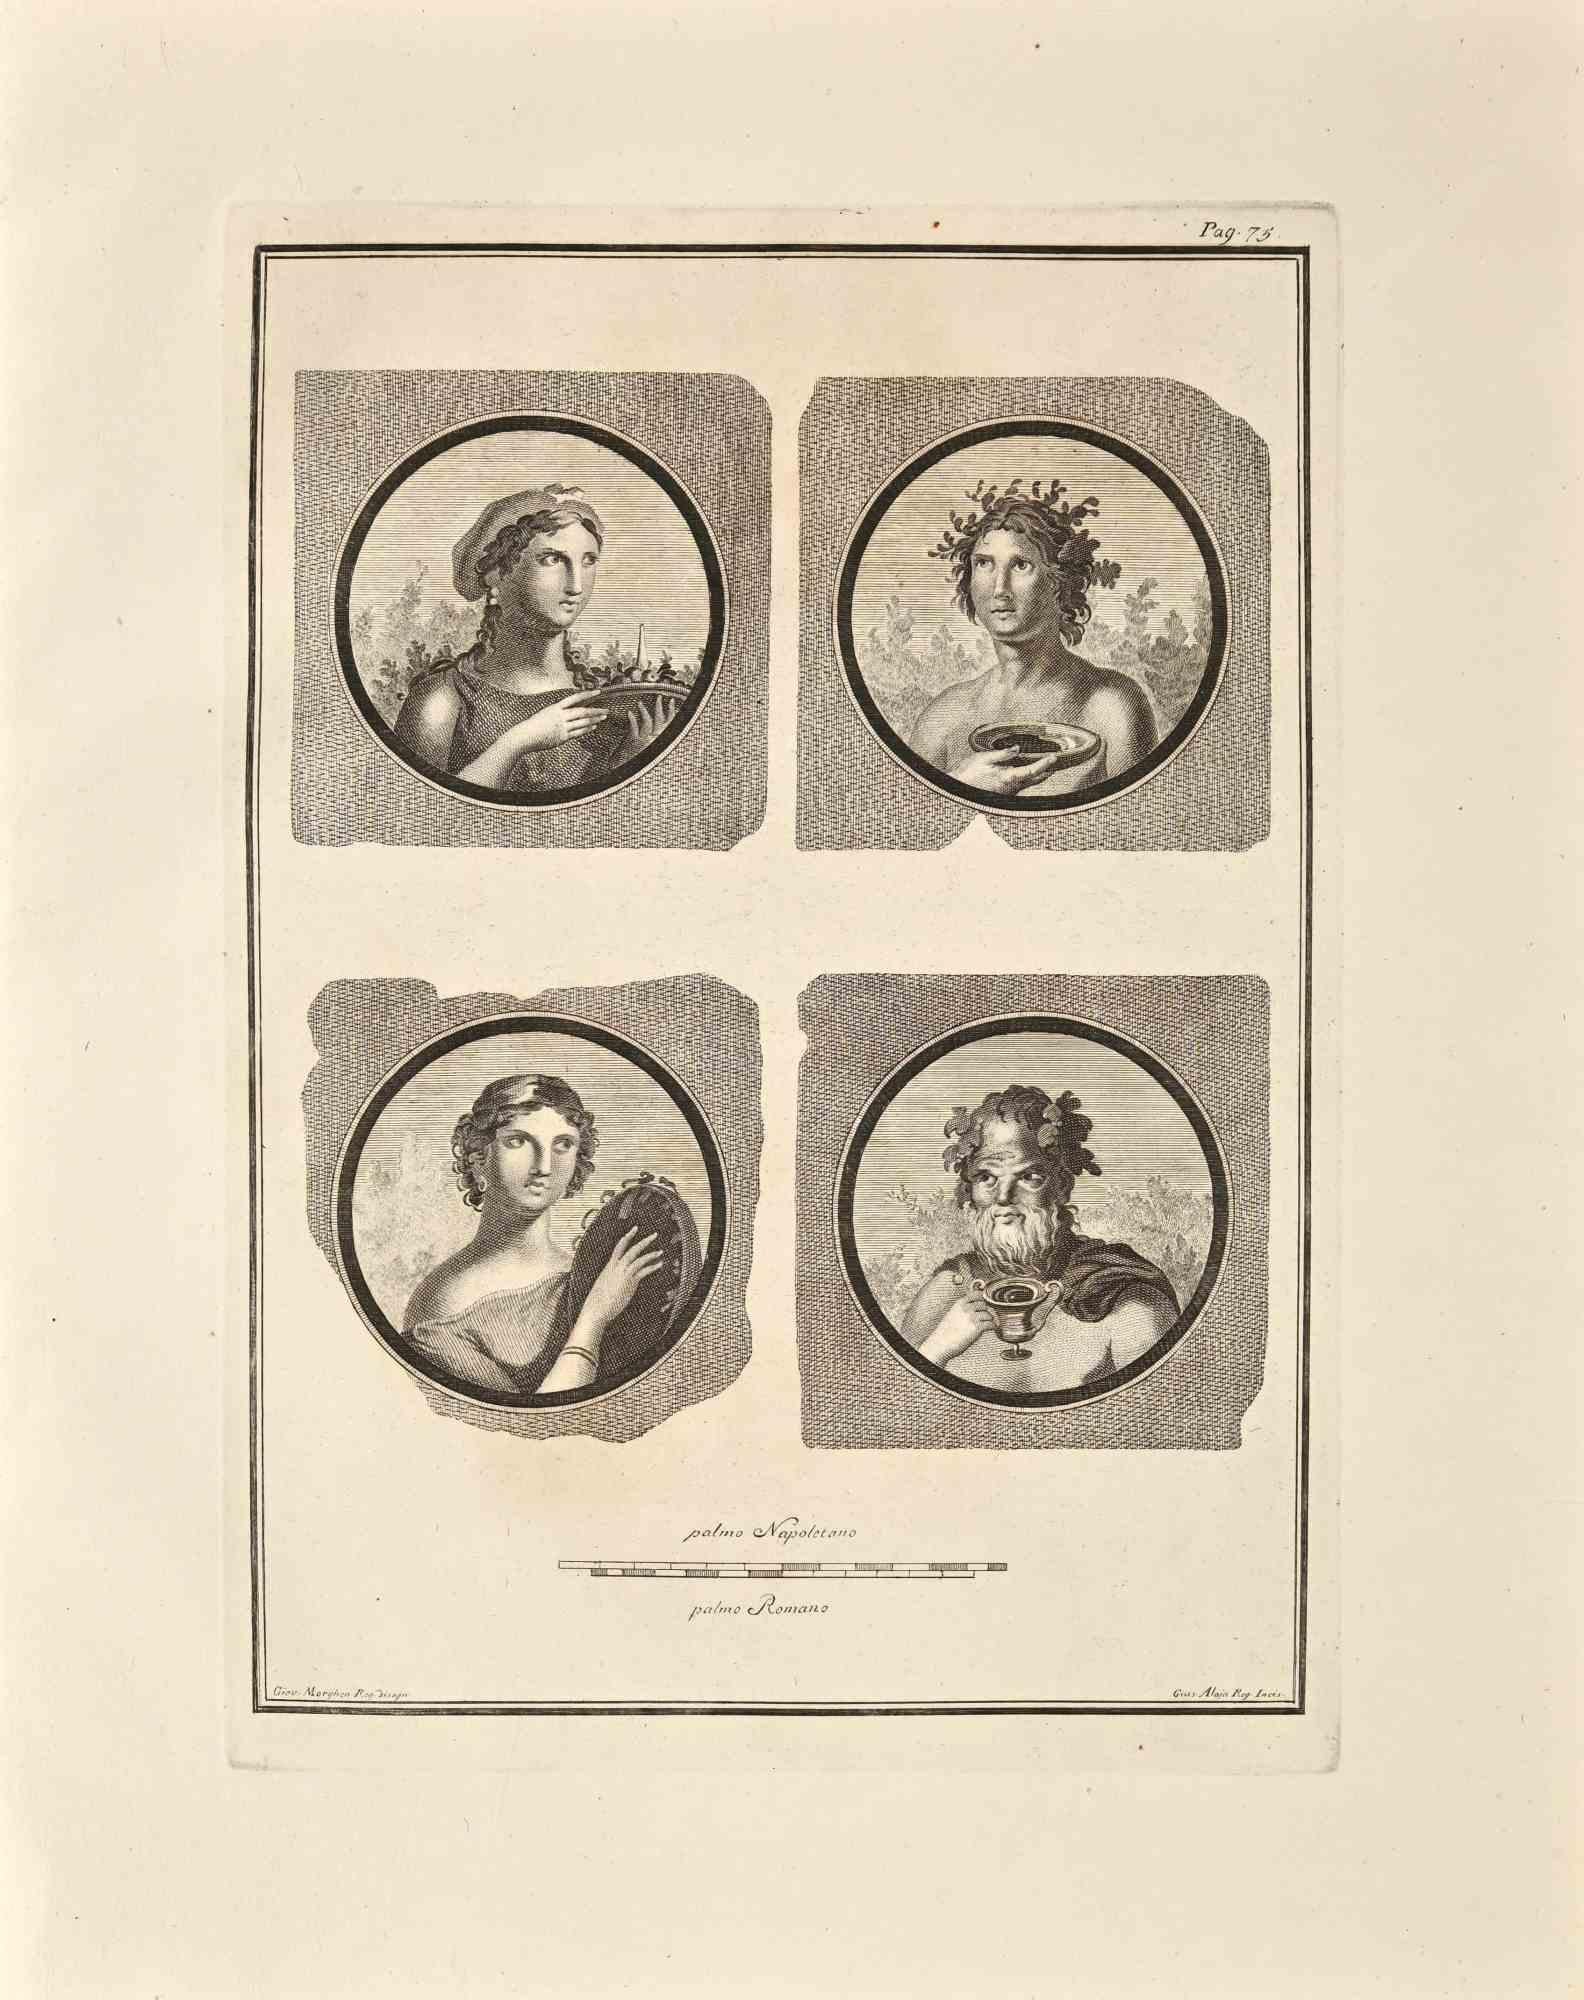 Portraits romains antiques de la série "Antiquités d'Herculanum", est une gravure sur papier réalisée par Giovanni Morghen au 18ème siècle.
 
Signé sur la plaque.
 
Bon état avec quelques rousseurs et pliages.
 
La gravure appartient à la suite